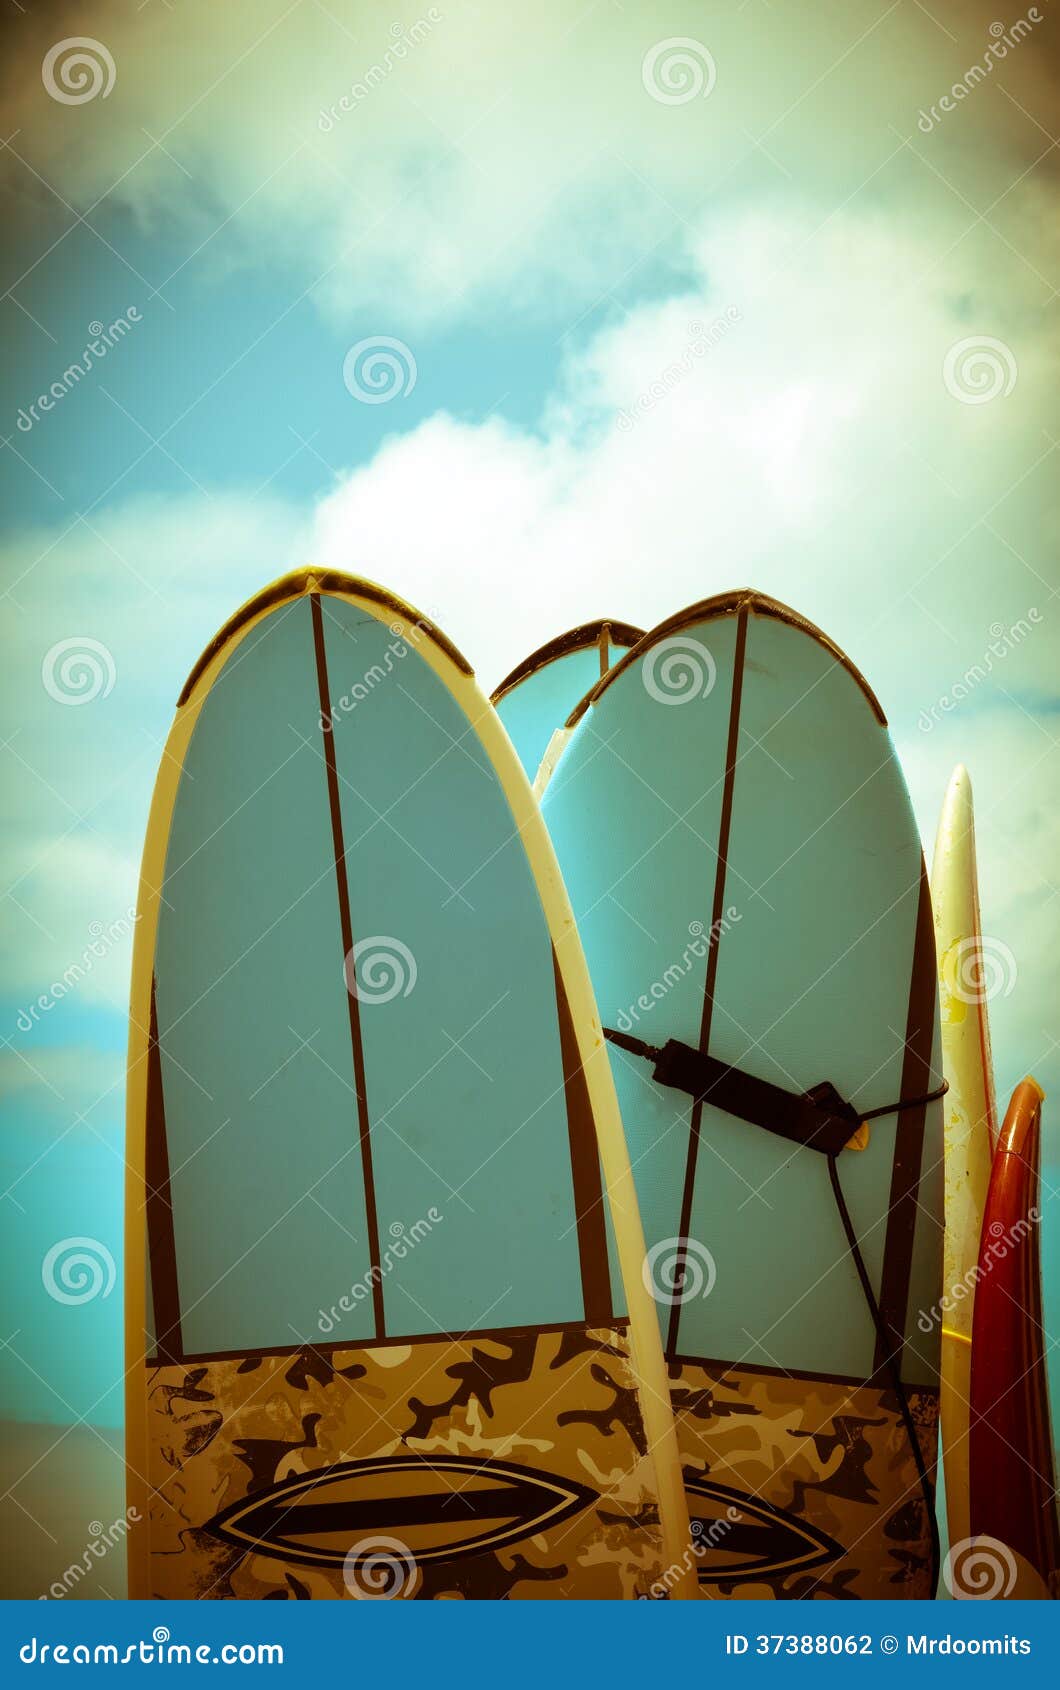 vintage surf boards